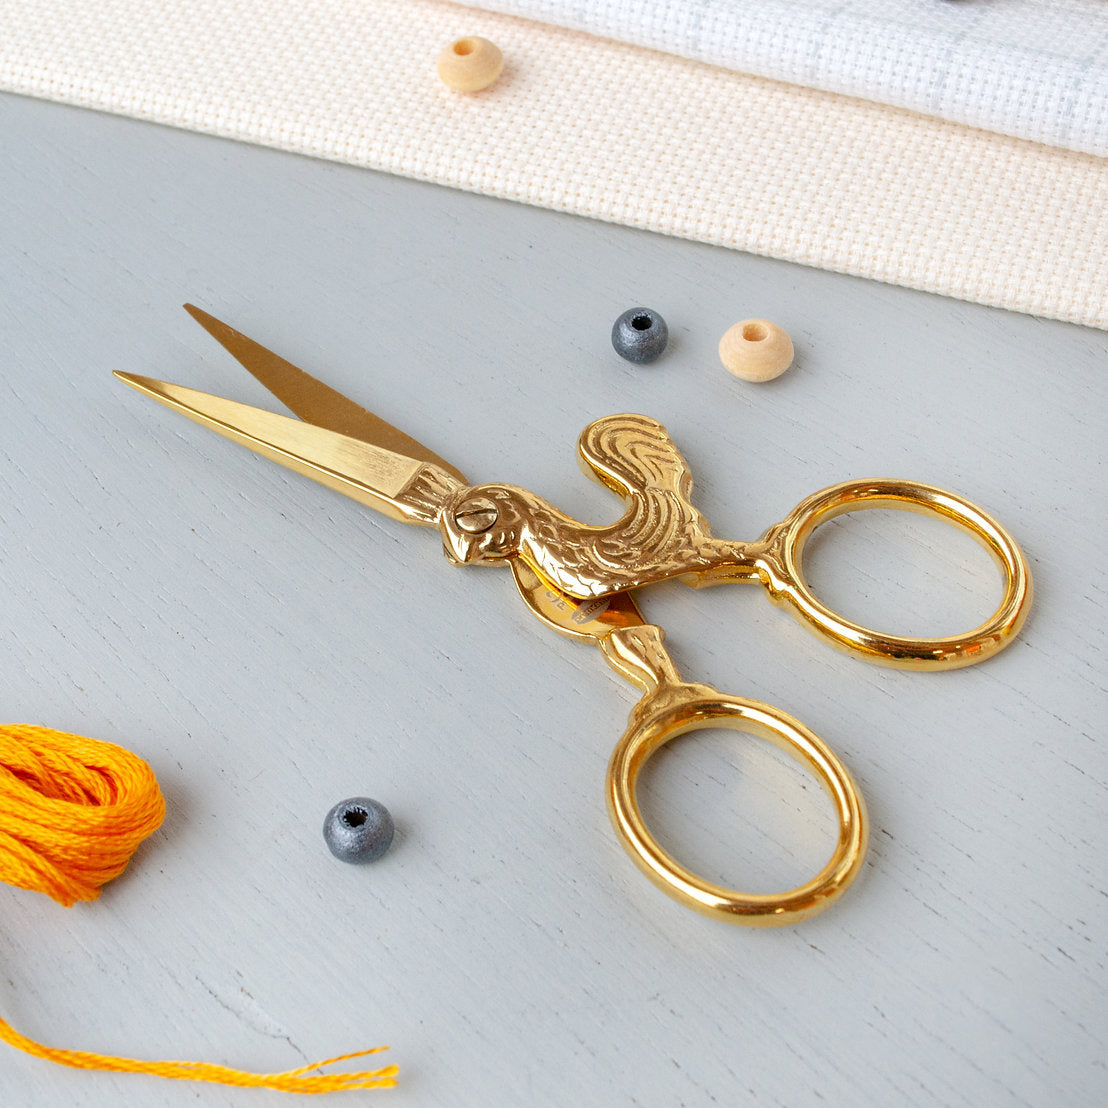 Llama Embroidery Scissors - Alpaca Embroidery Scissors - Cute Embroidery  Scissors - Rose Gold Scissors - Llama Scissors - FINAL SALE